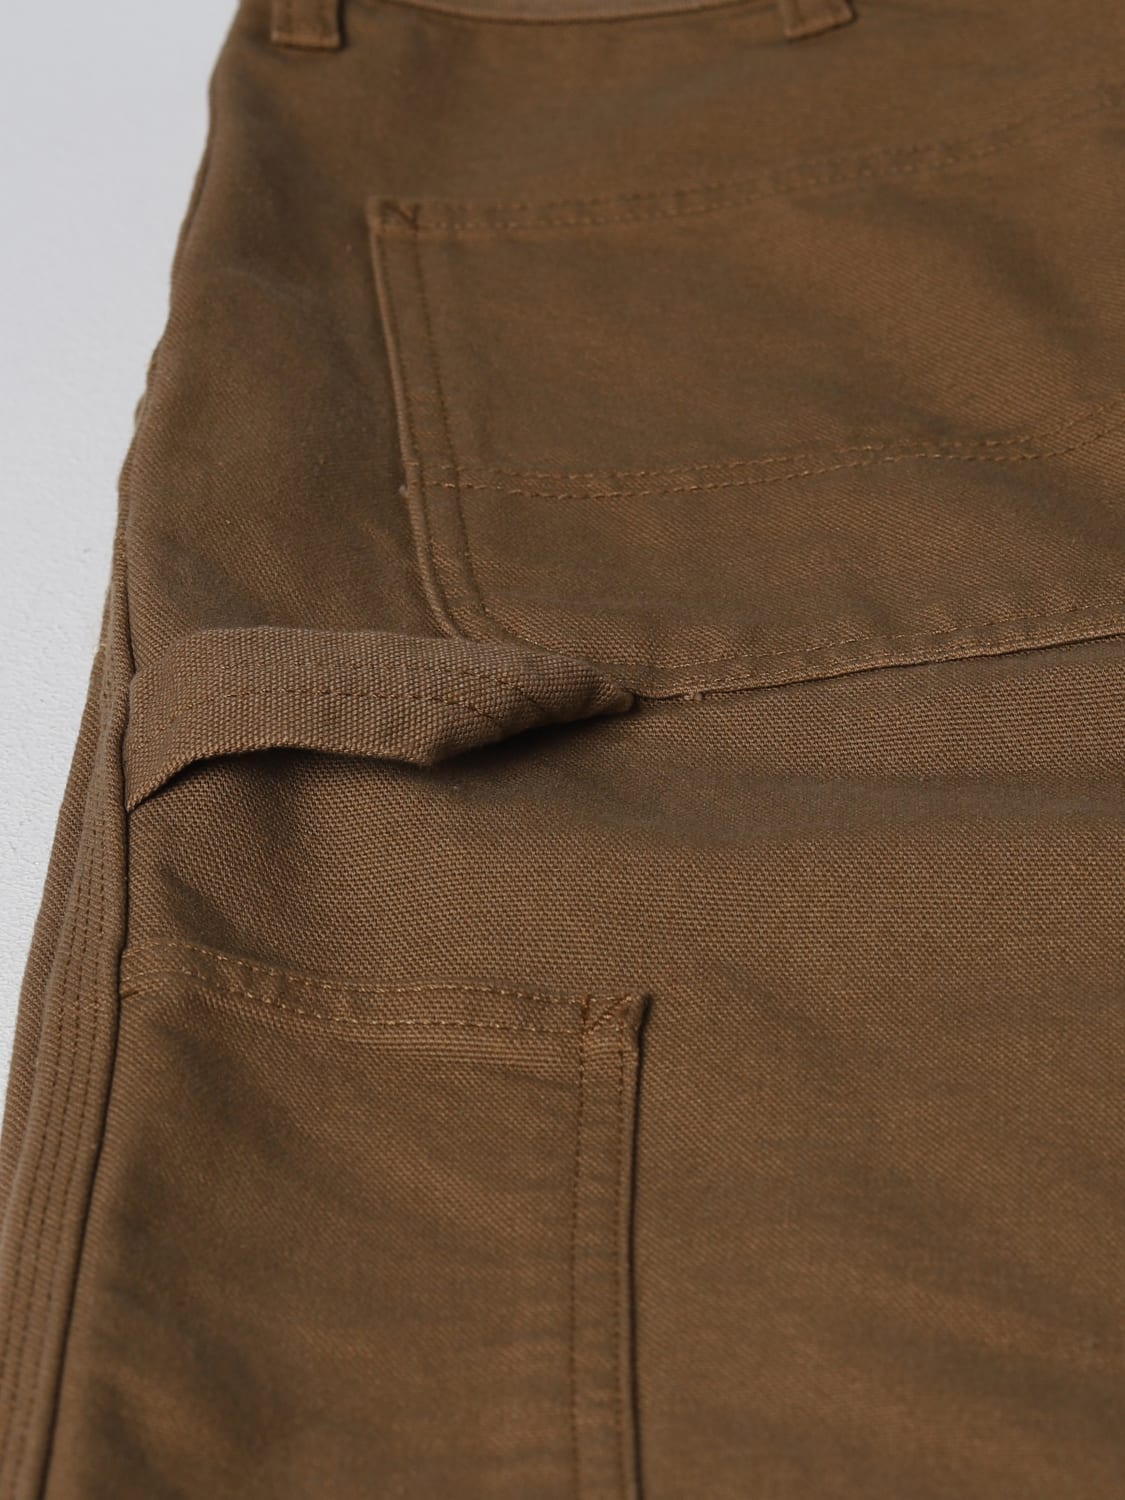 Carhartt WIP Regular Cargo Pants Men Tobacco in Cotton - Size: 31